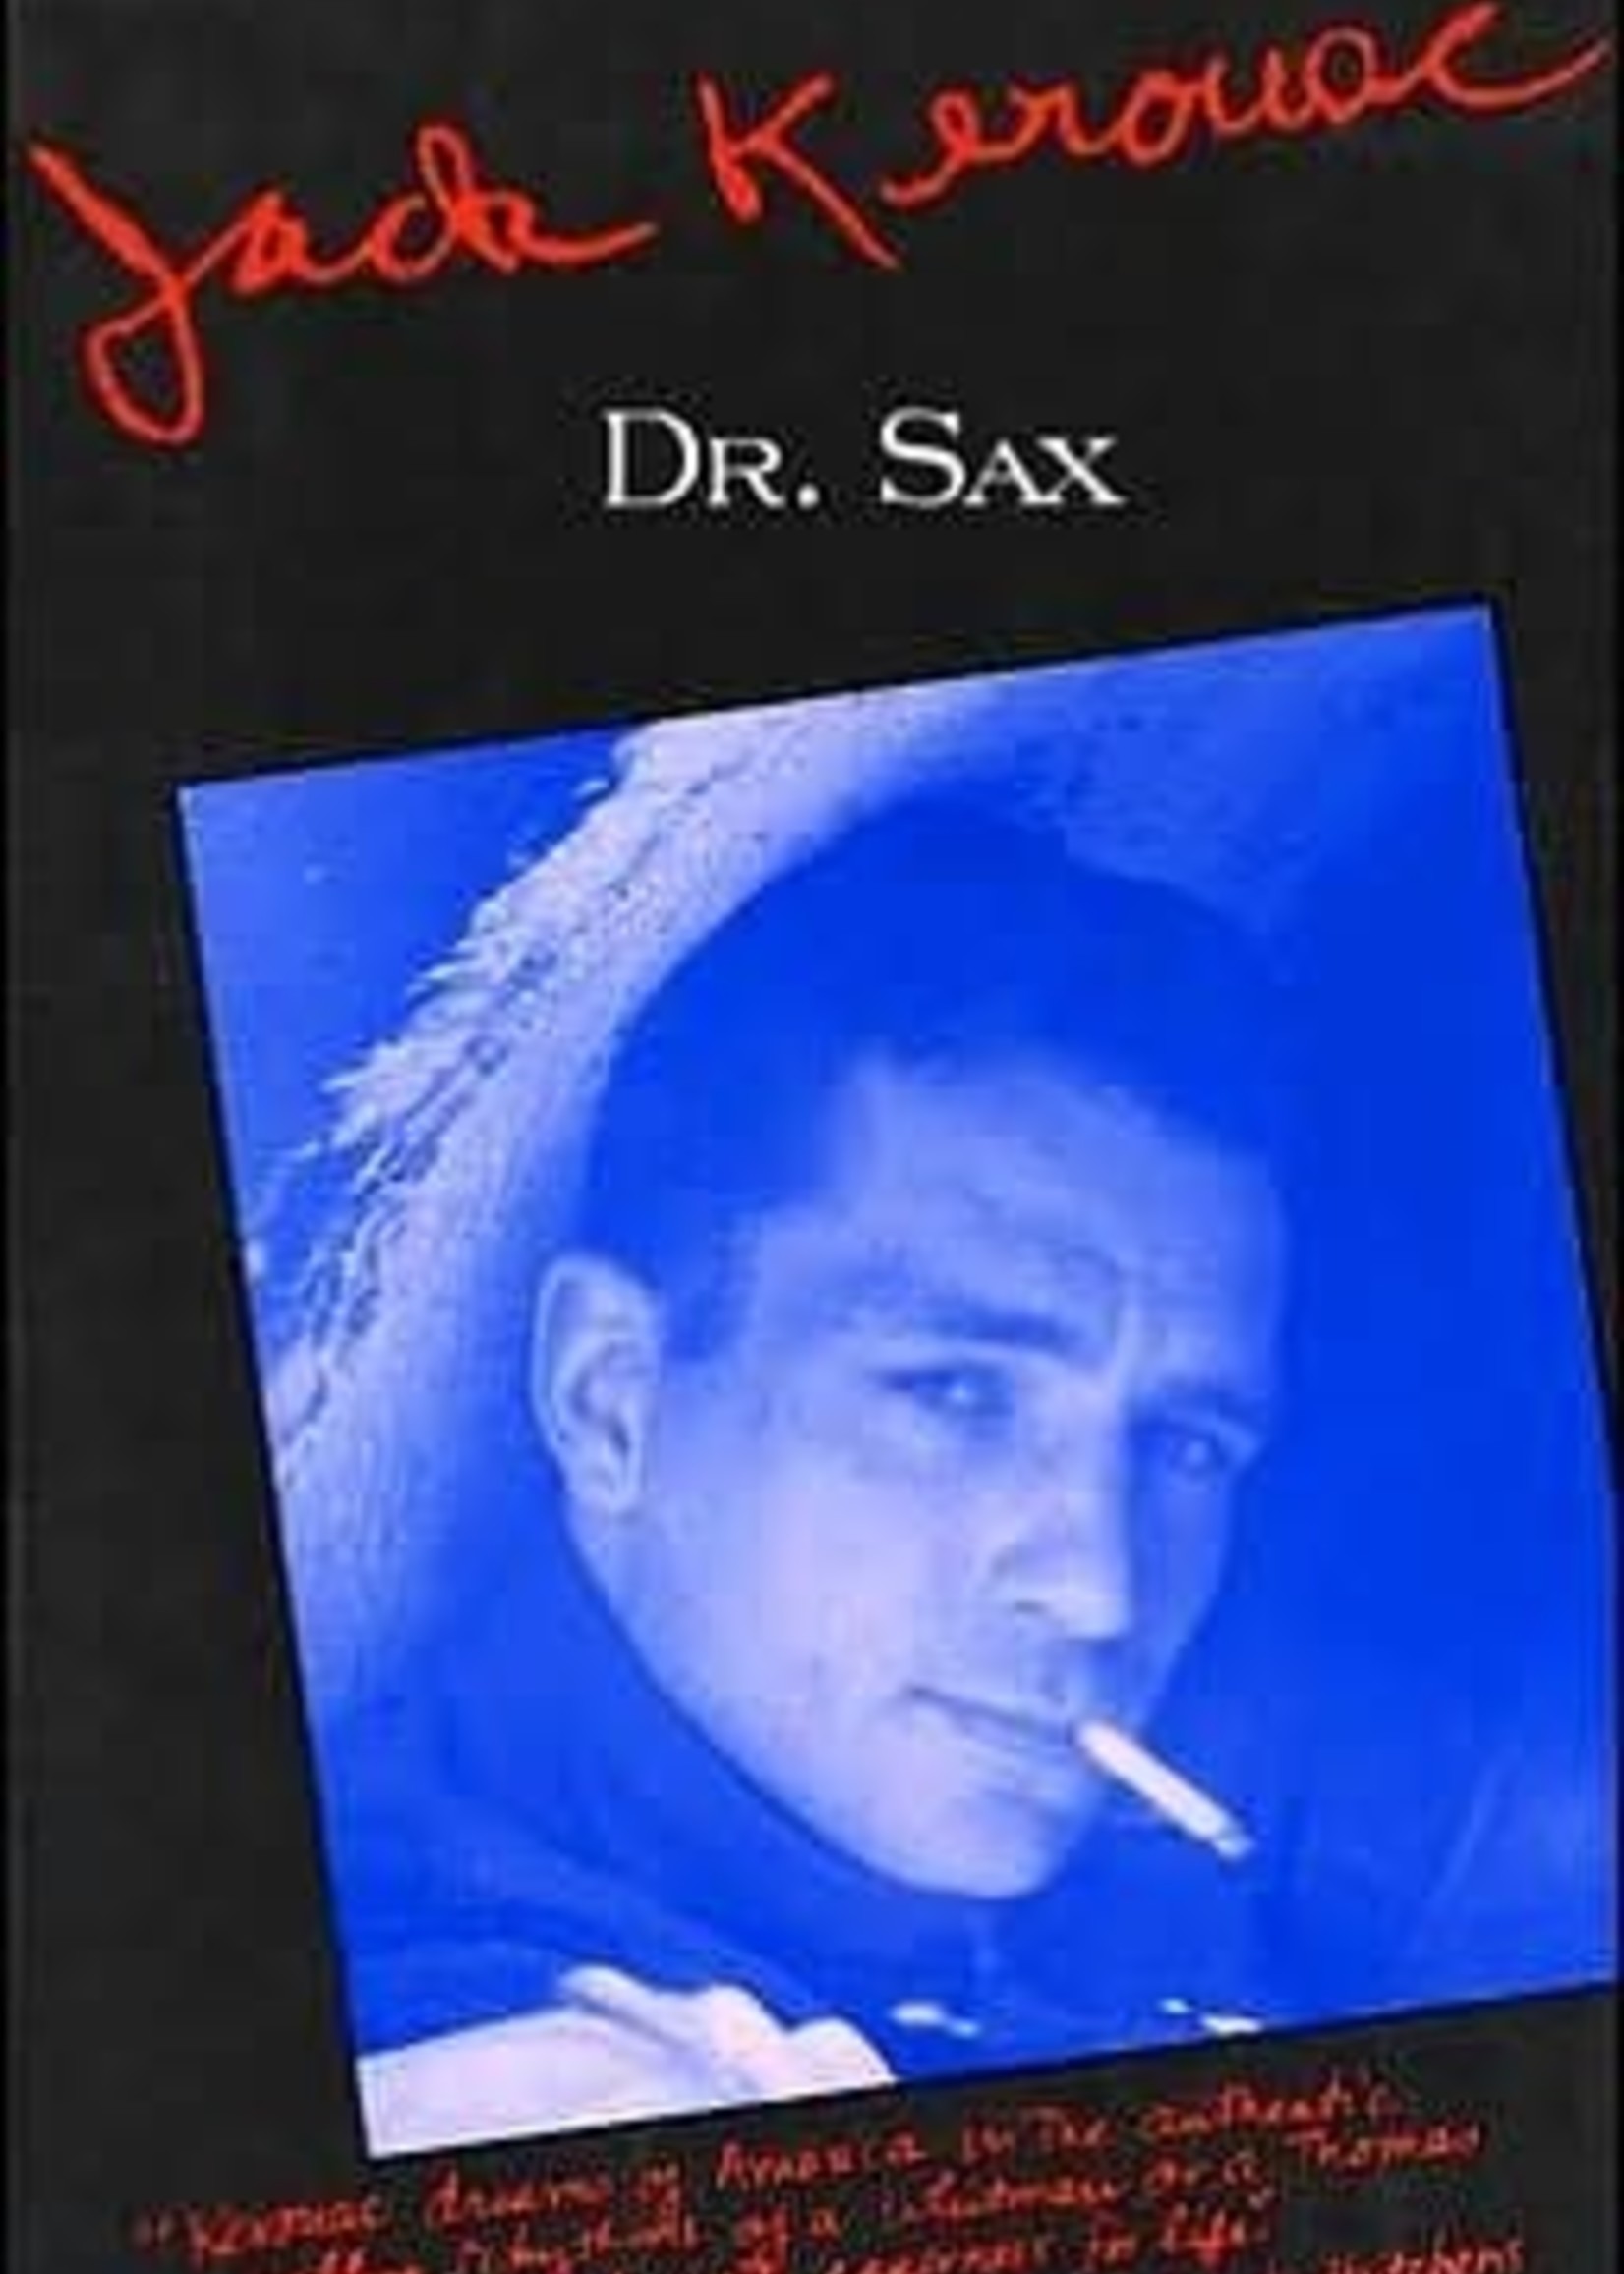 Dr. Sax by Jack Kerouac